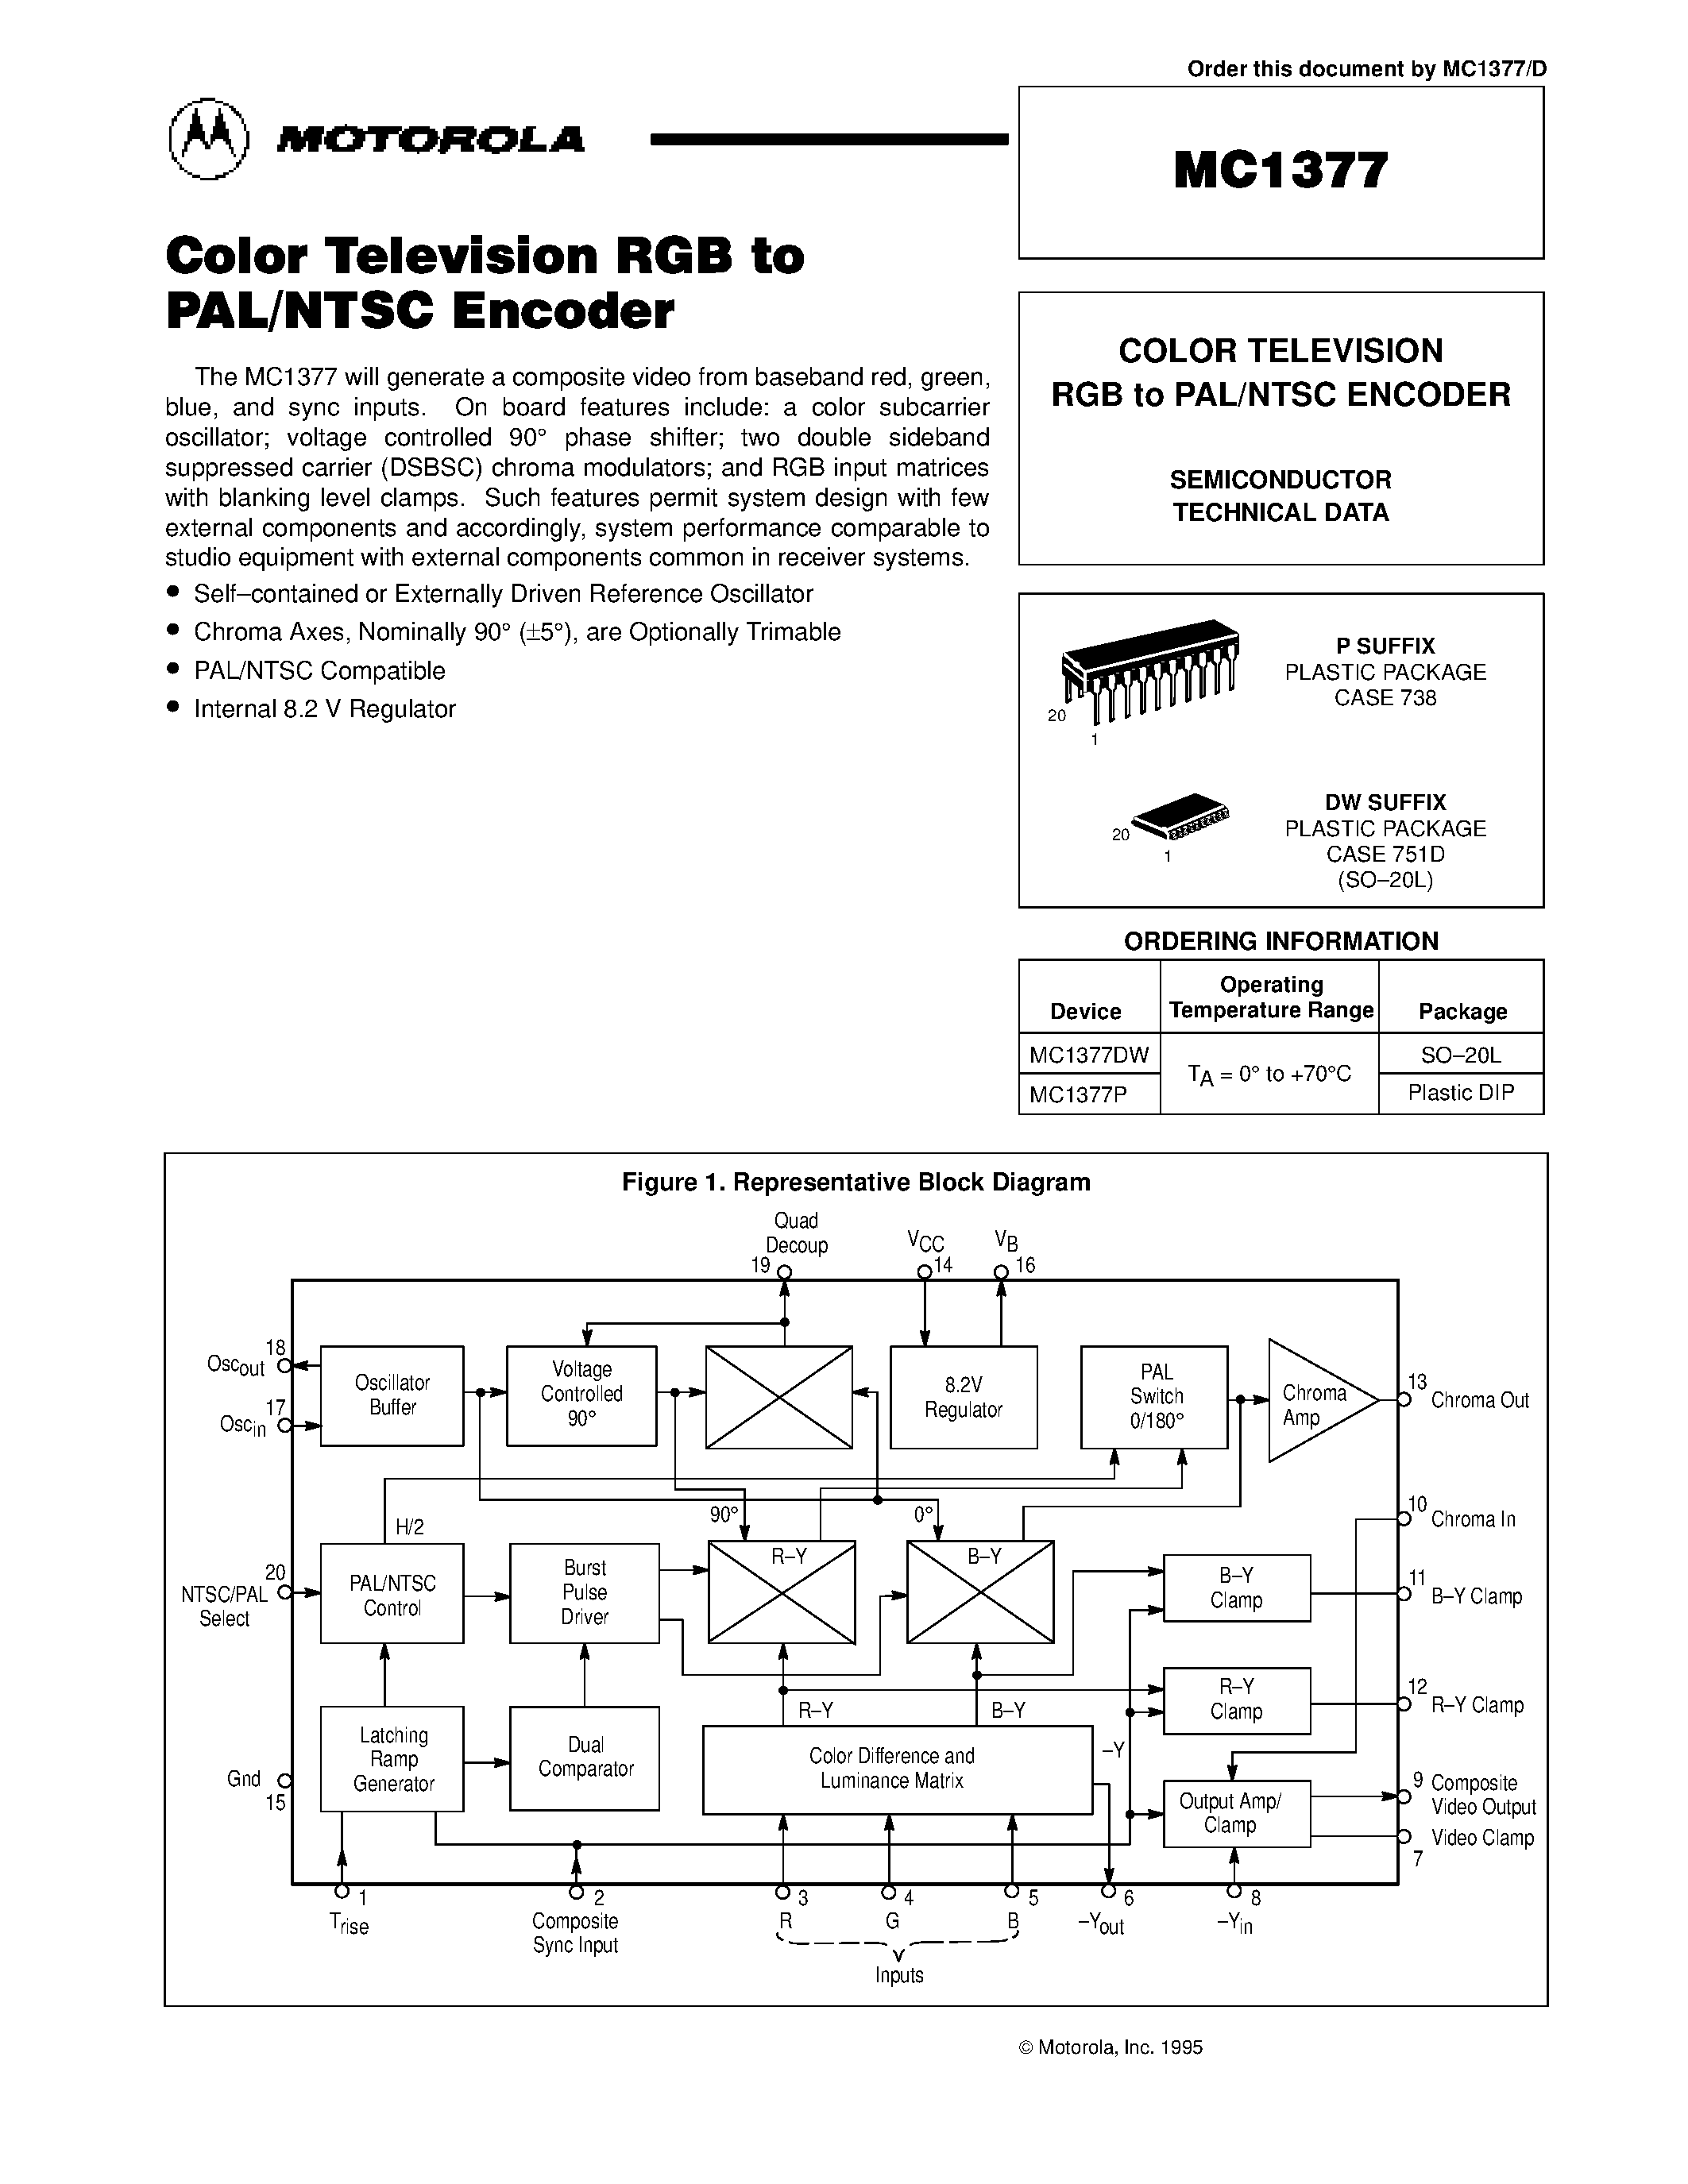 Даташит MC1377 - COLOR TELEVISION RGB to PAL/NTSC ENCODER страница 1